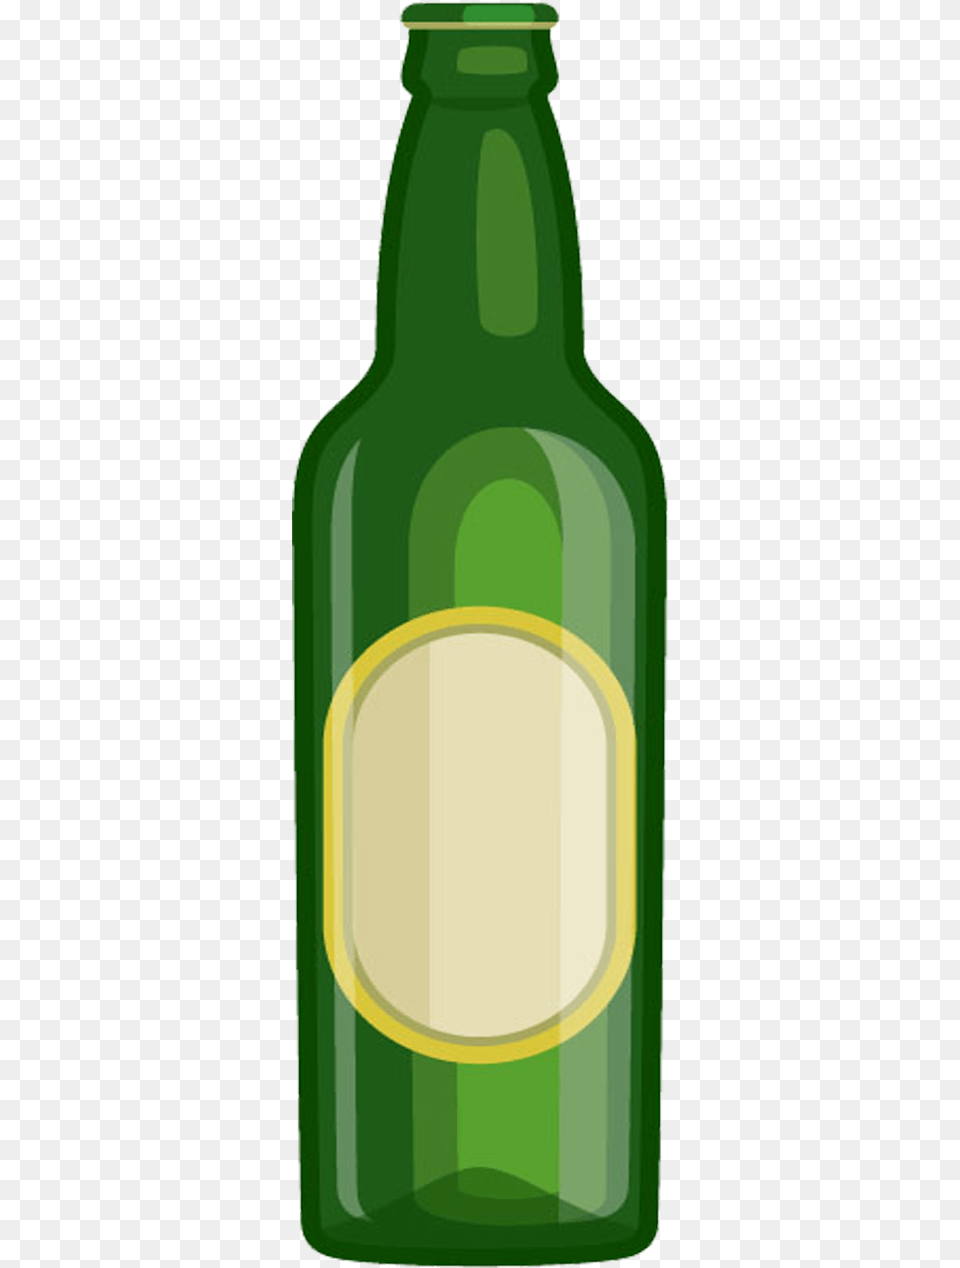 Beer Bottle Cartoon, Alcohol, Beer Bottle, Beverage, Liquor Free Transparent Png